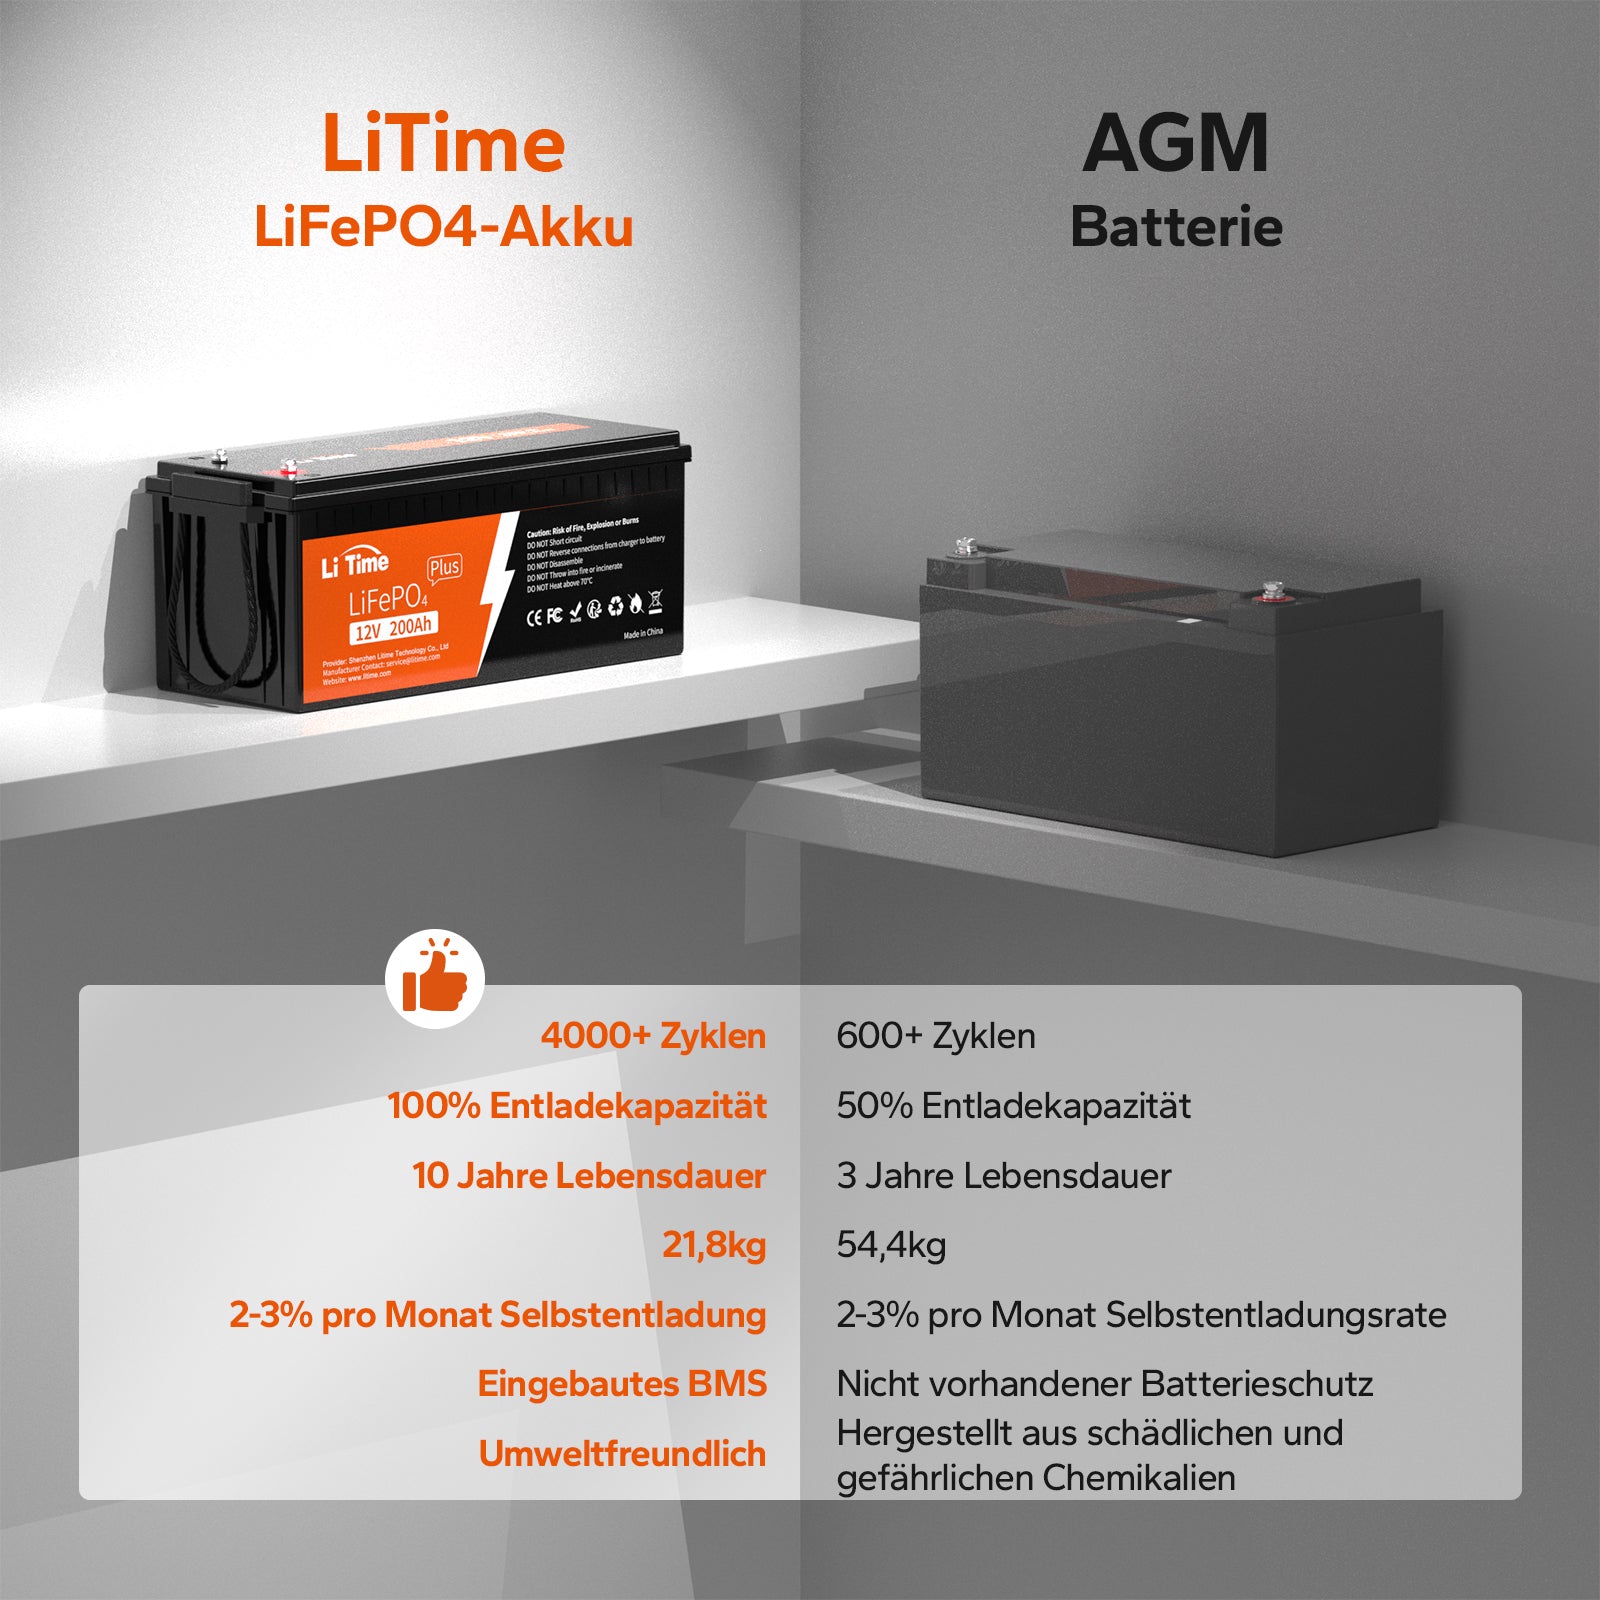 LiTime 12V 200Ah Plus LiFePO4 Akku mit 2560Wh Energie, 100% Entladetiefe, 4000~15000 Zyklen und 10 Jahre Lebensdauer